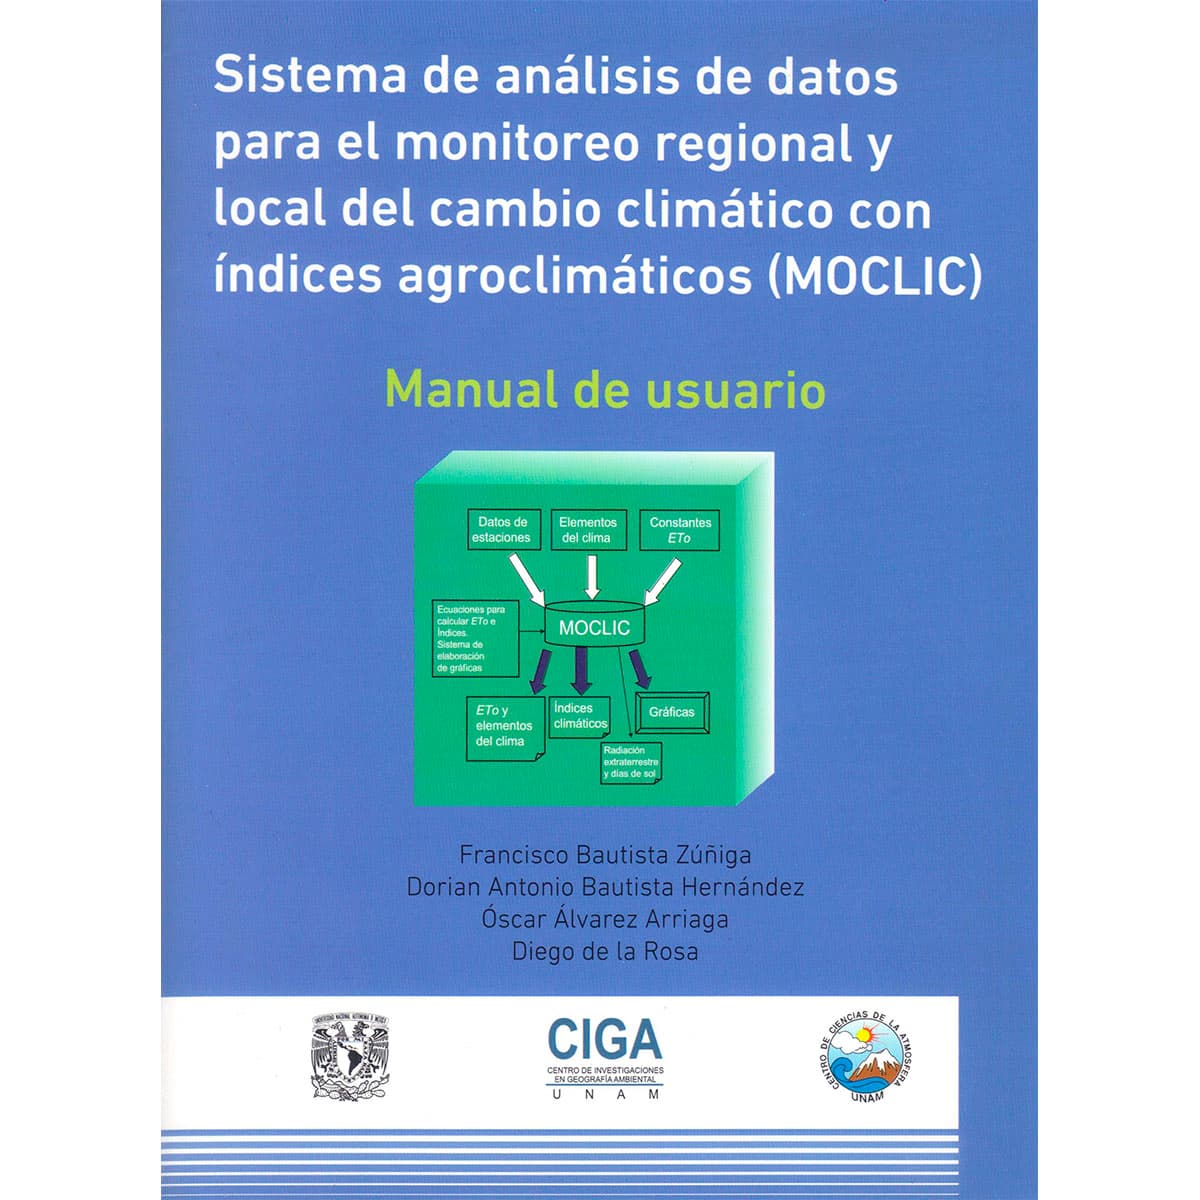 SISTEMAS DE ANÁLISIS DE DATOS PARA EL MONITOREO REGIONAL Y LOCAL DEL CAMBIO CLIMÁTICO CON ÍNDICES AGROCLIMÁTICOS (MOCLIC)